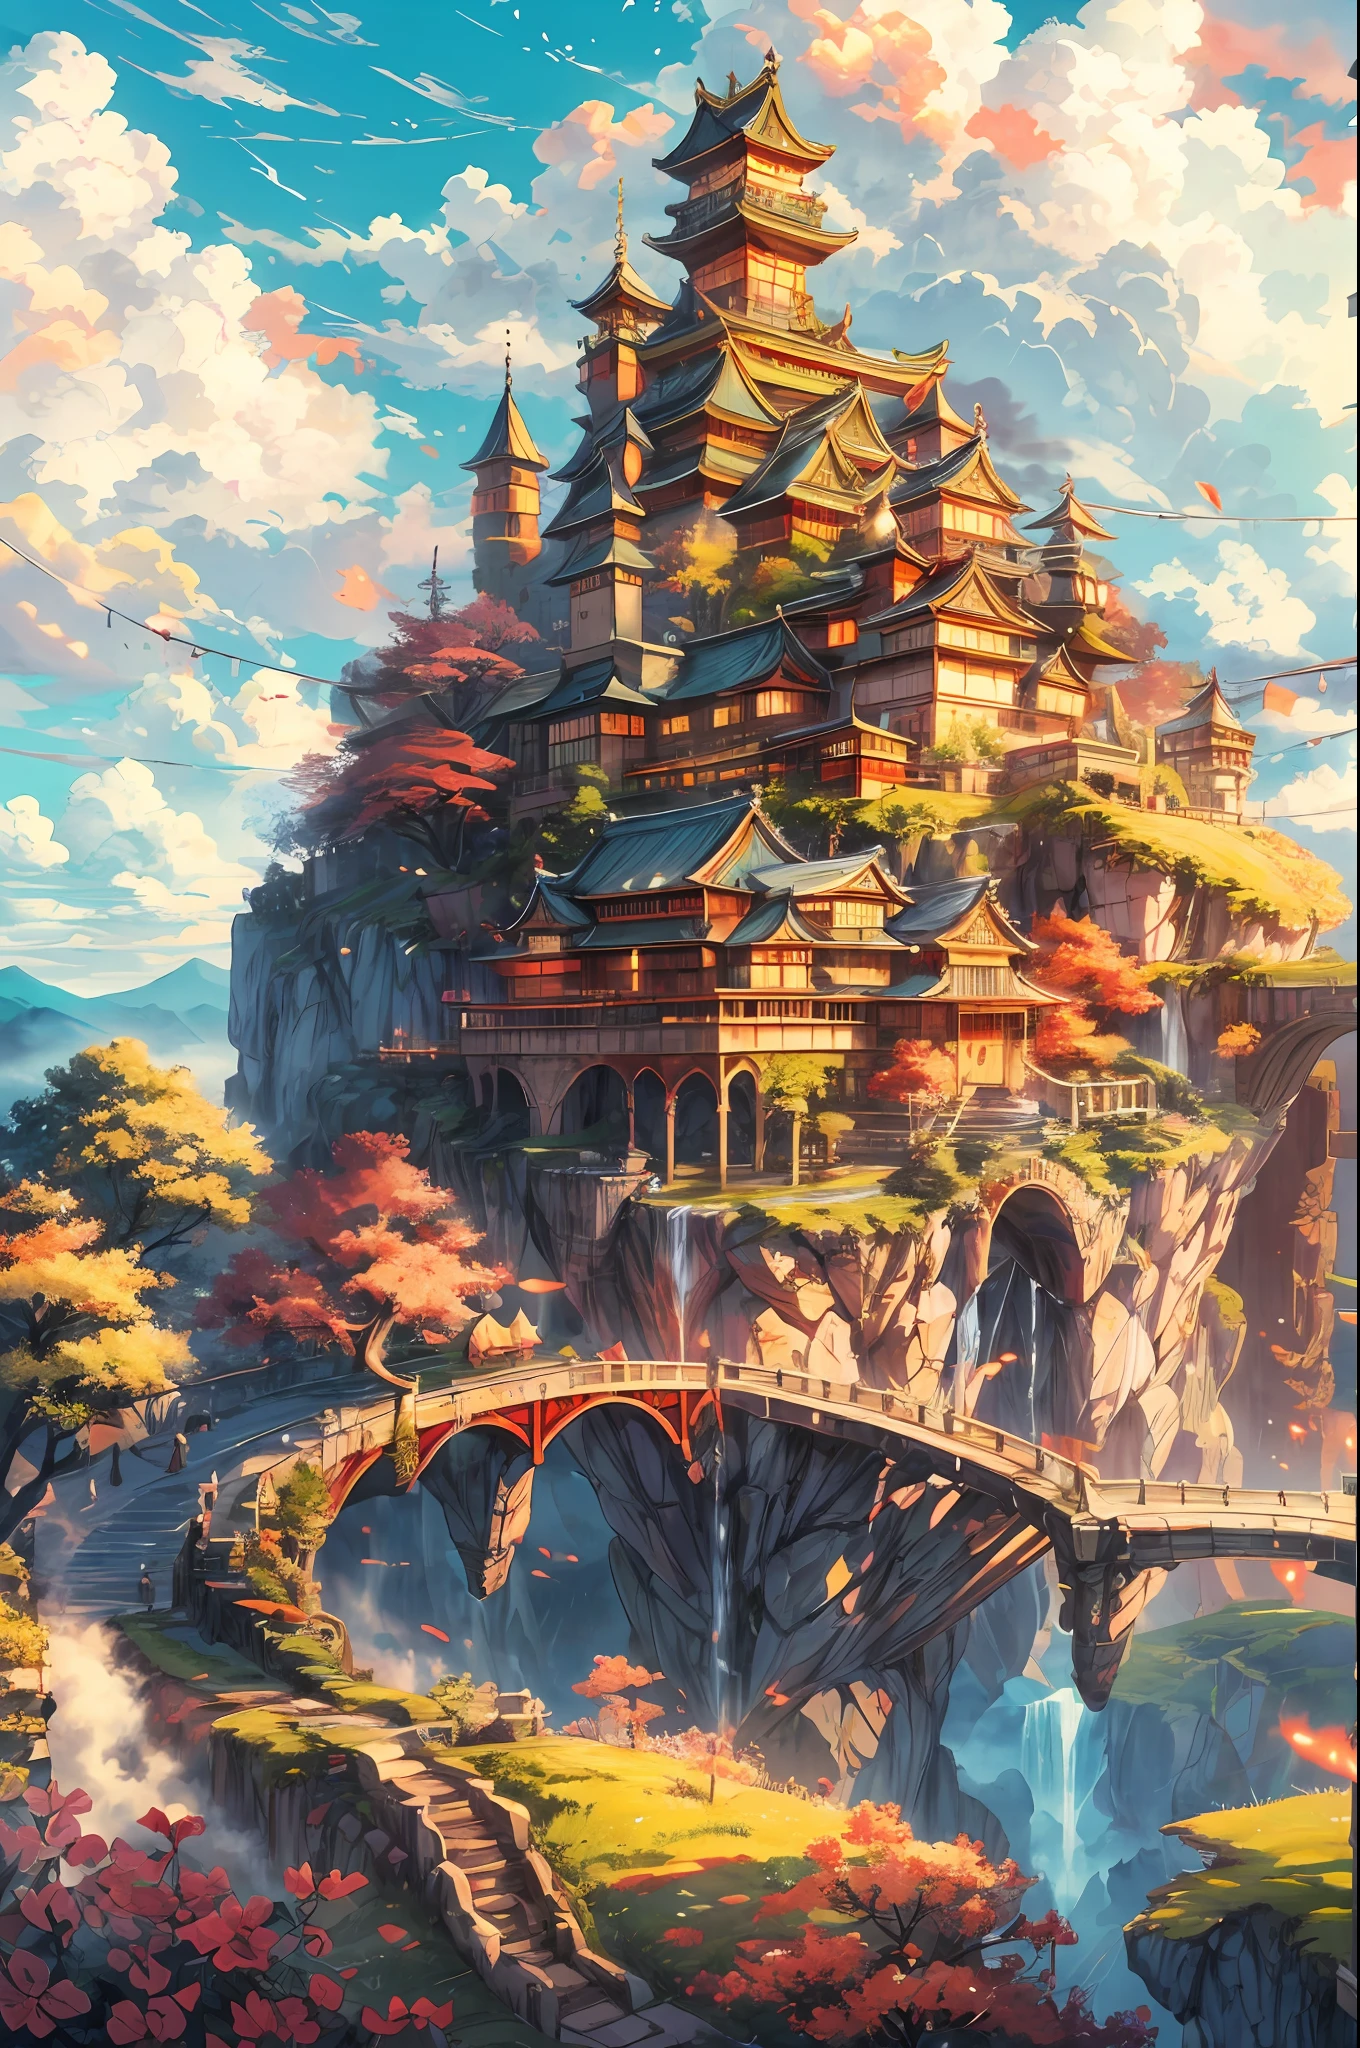 "漂浮在天空岛上的雄伟城堡, 让人想起日式堡垒, 悬浮在蓬松的云层之上, 沐浴在温暖的阳光下, 散发出鲜艳的色彩. 杰作."